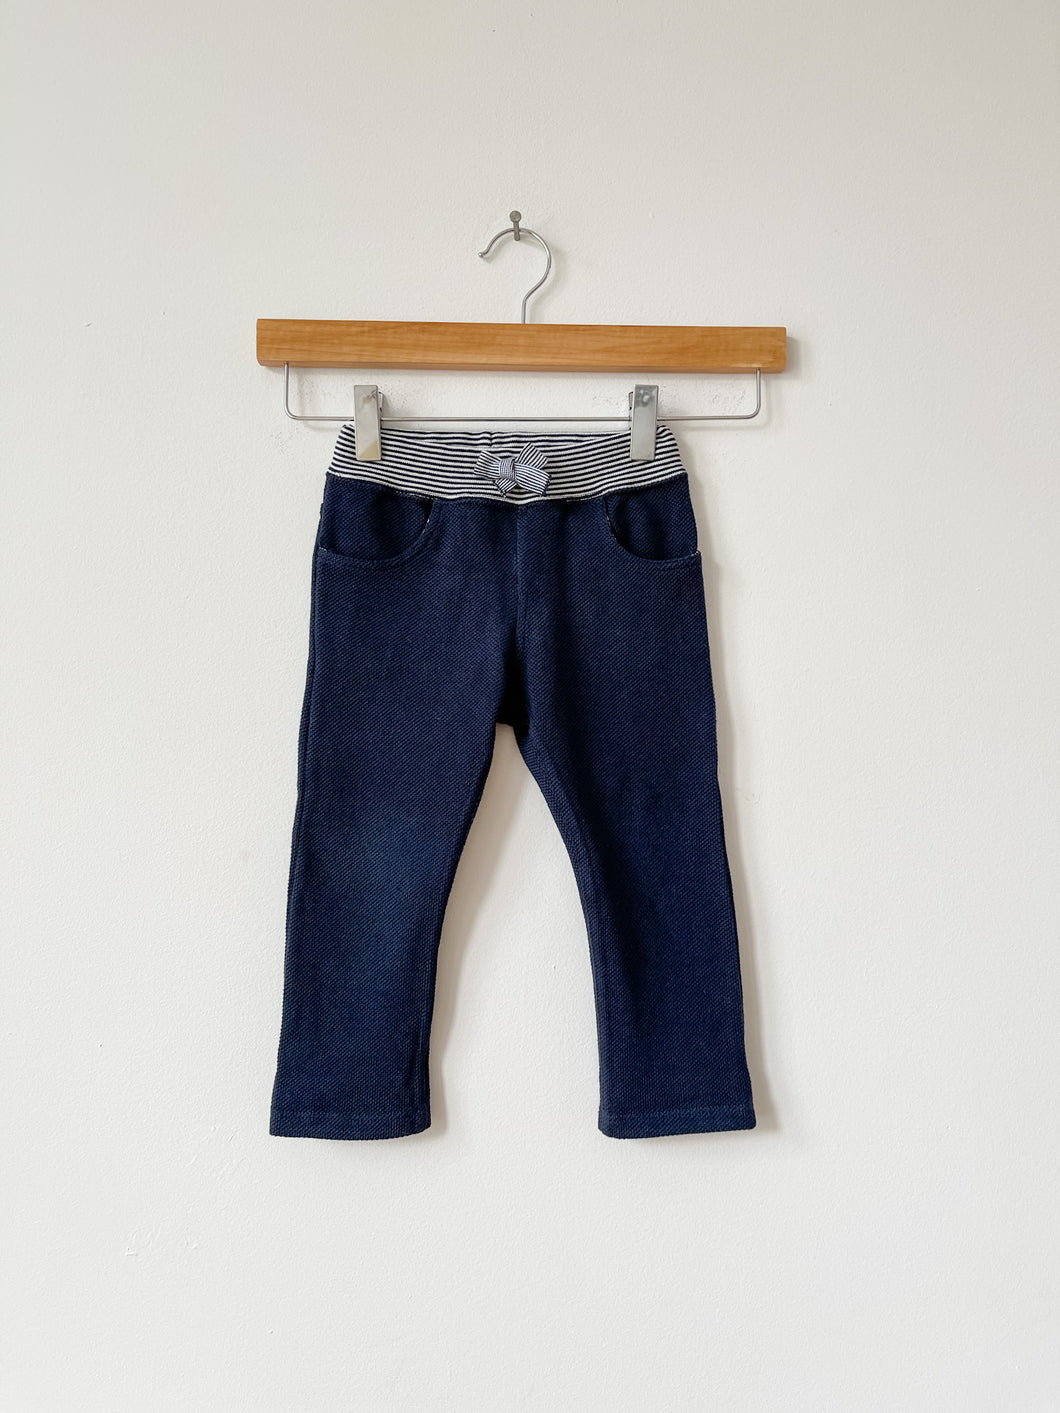 Blue Petit Bateau Pants Size 18 Months